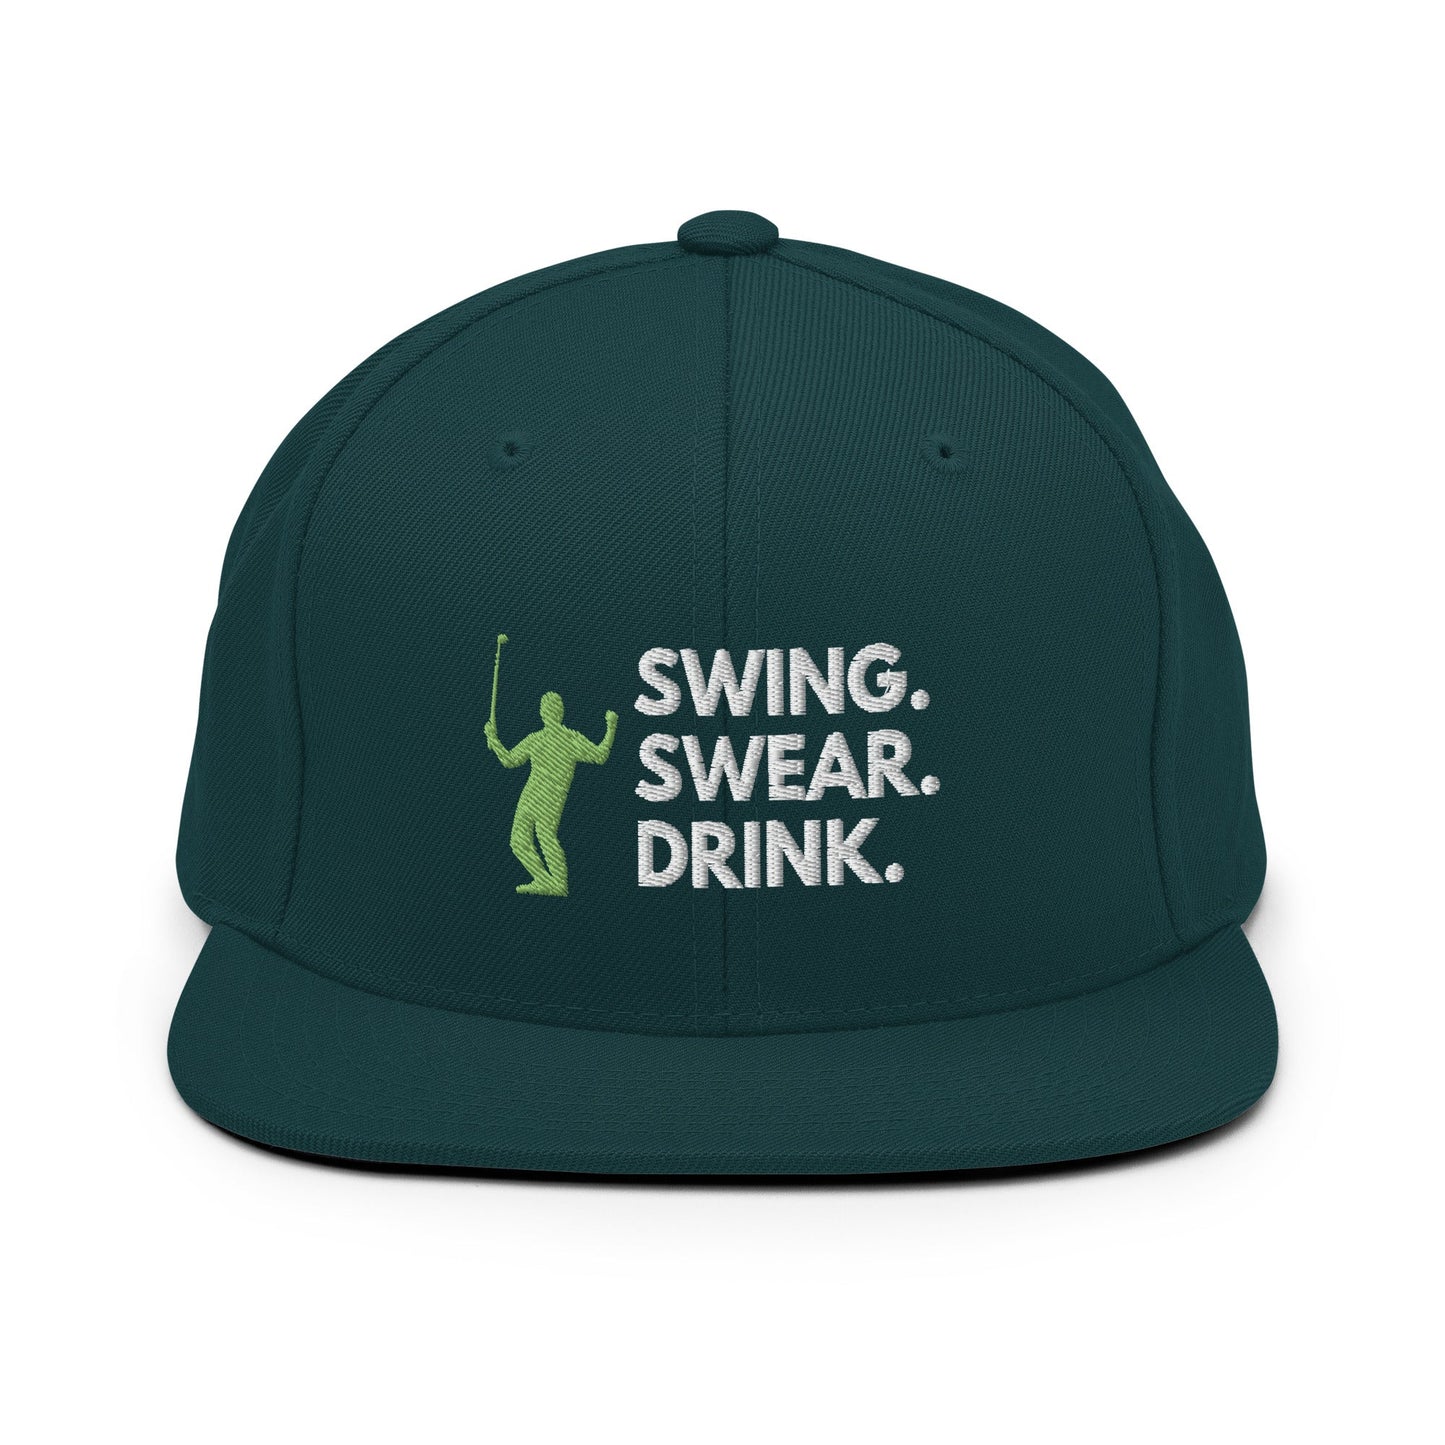 Funny Golfer Gifts  Snapback Hat Spruce Swing. Swear. Drink Snapback Hat